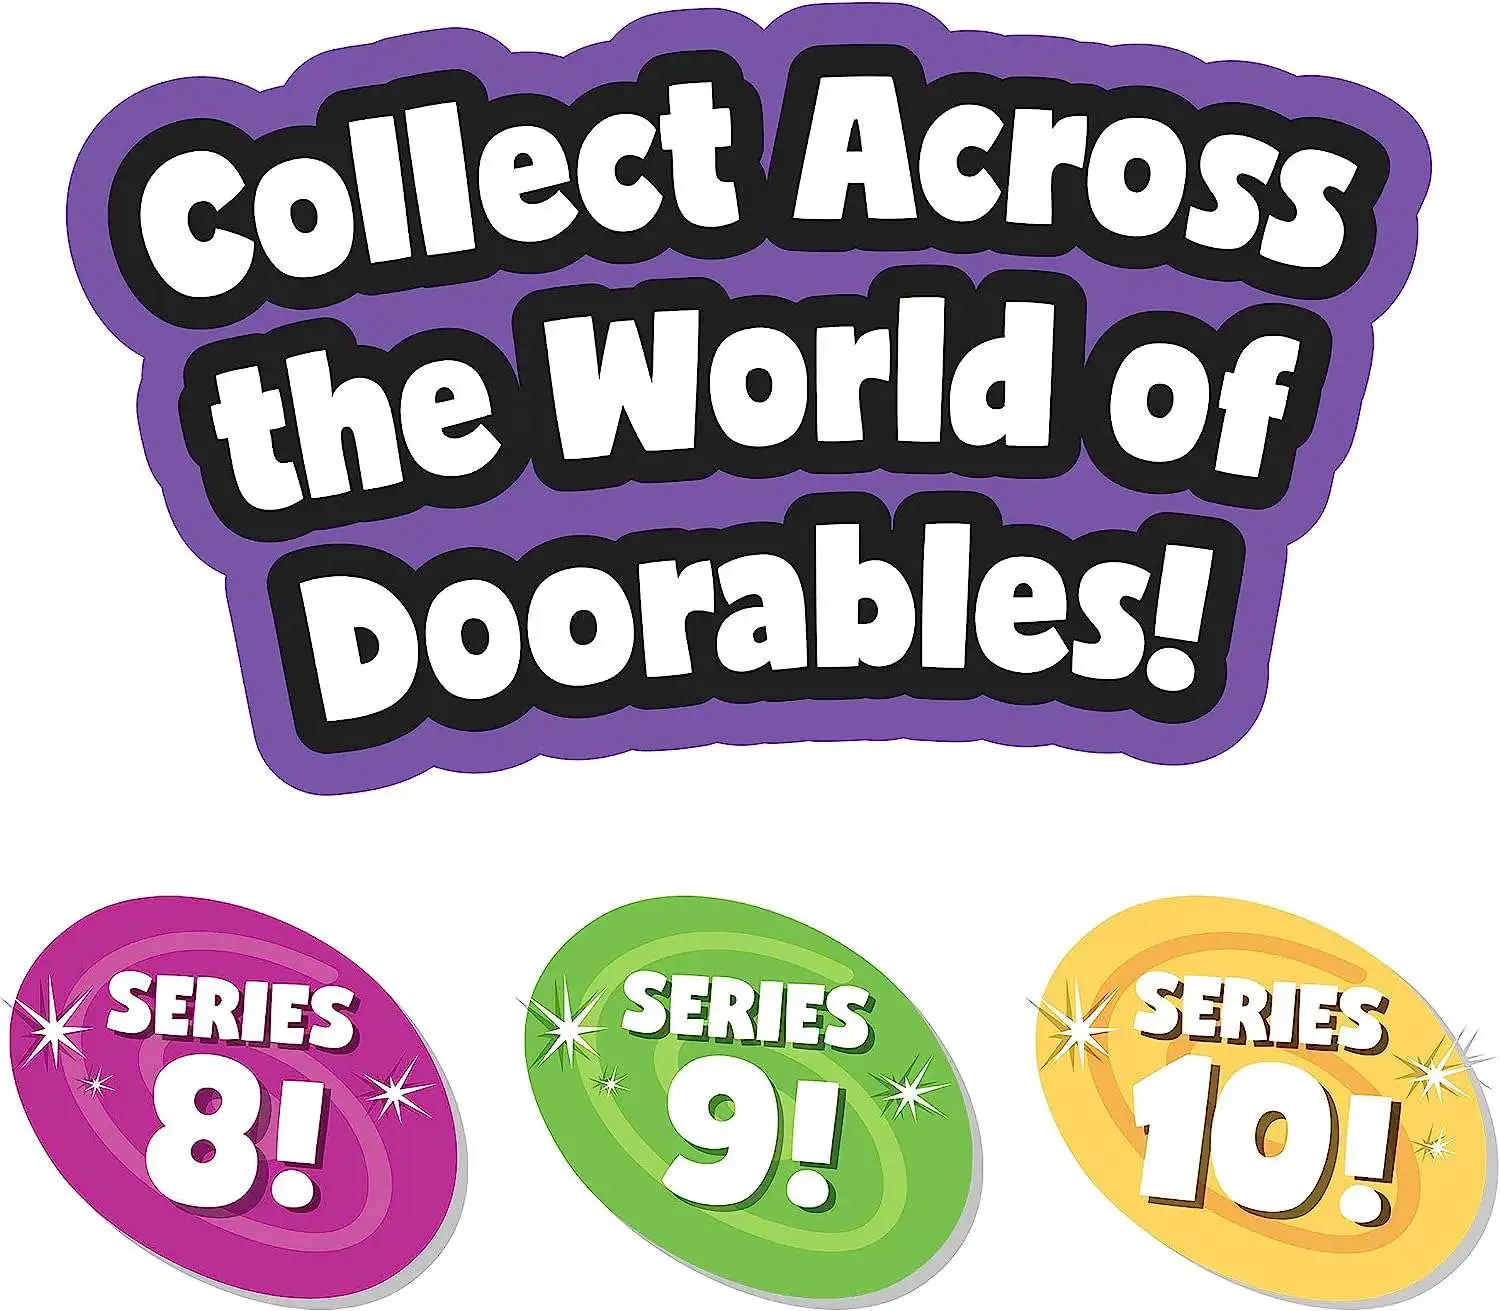 Doorables Series 8 